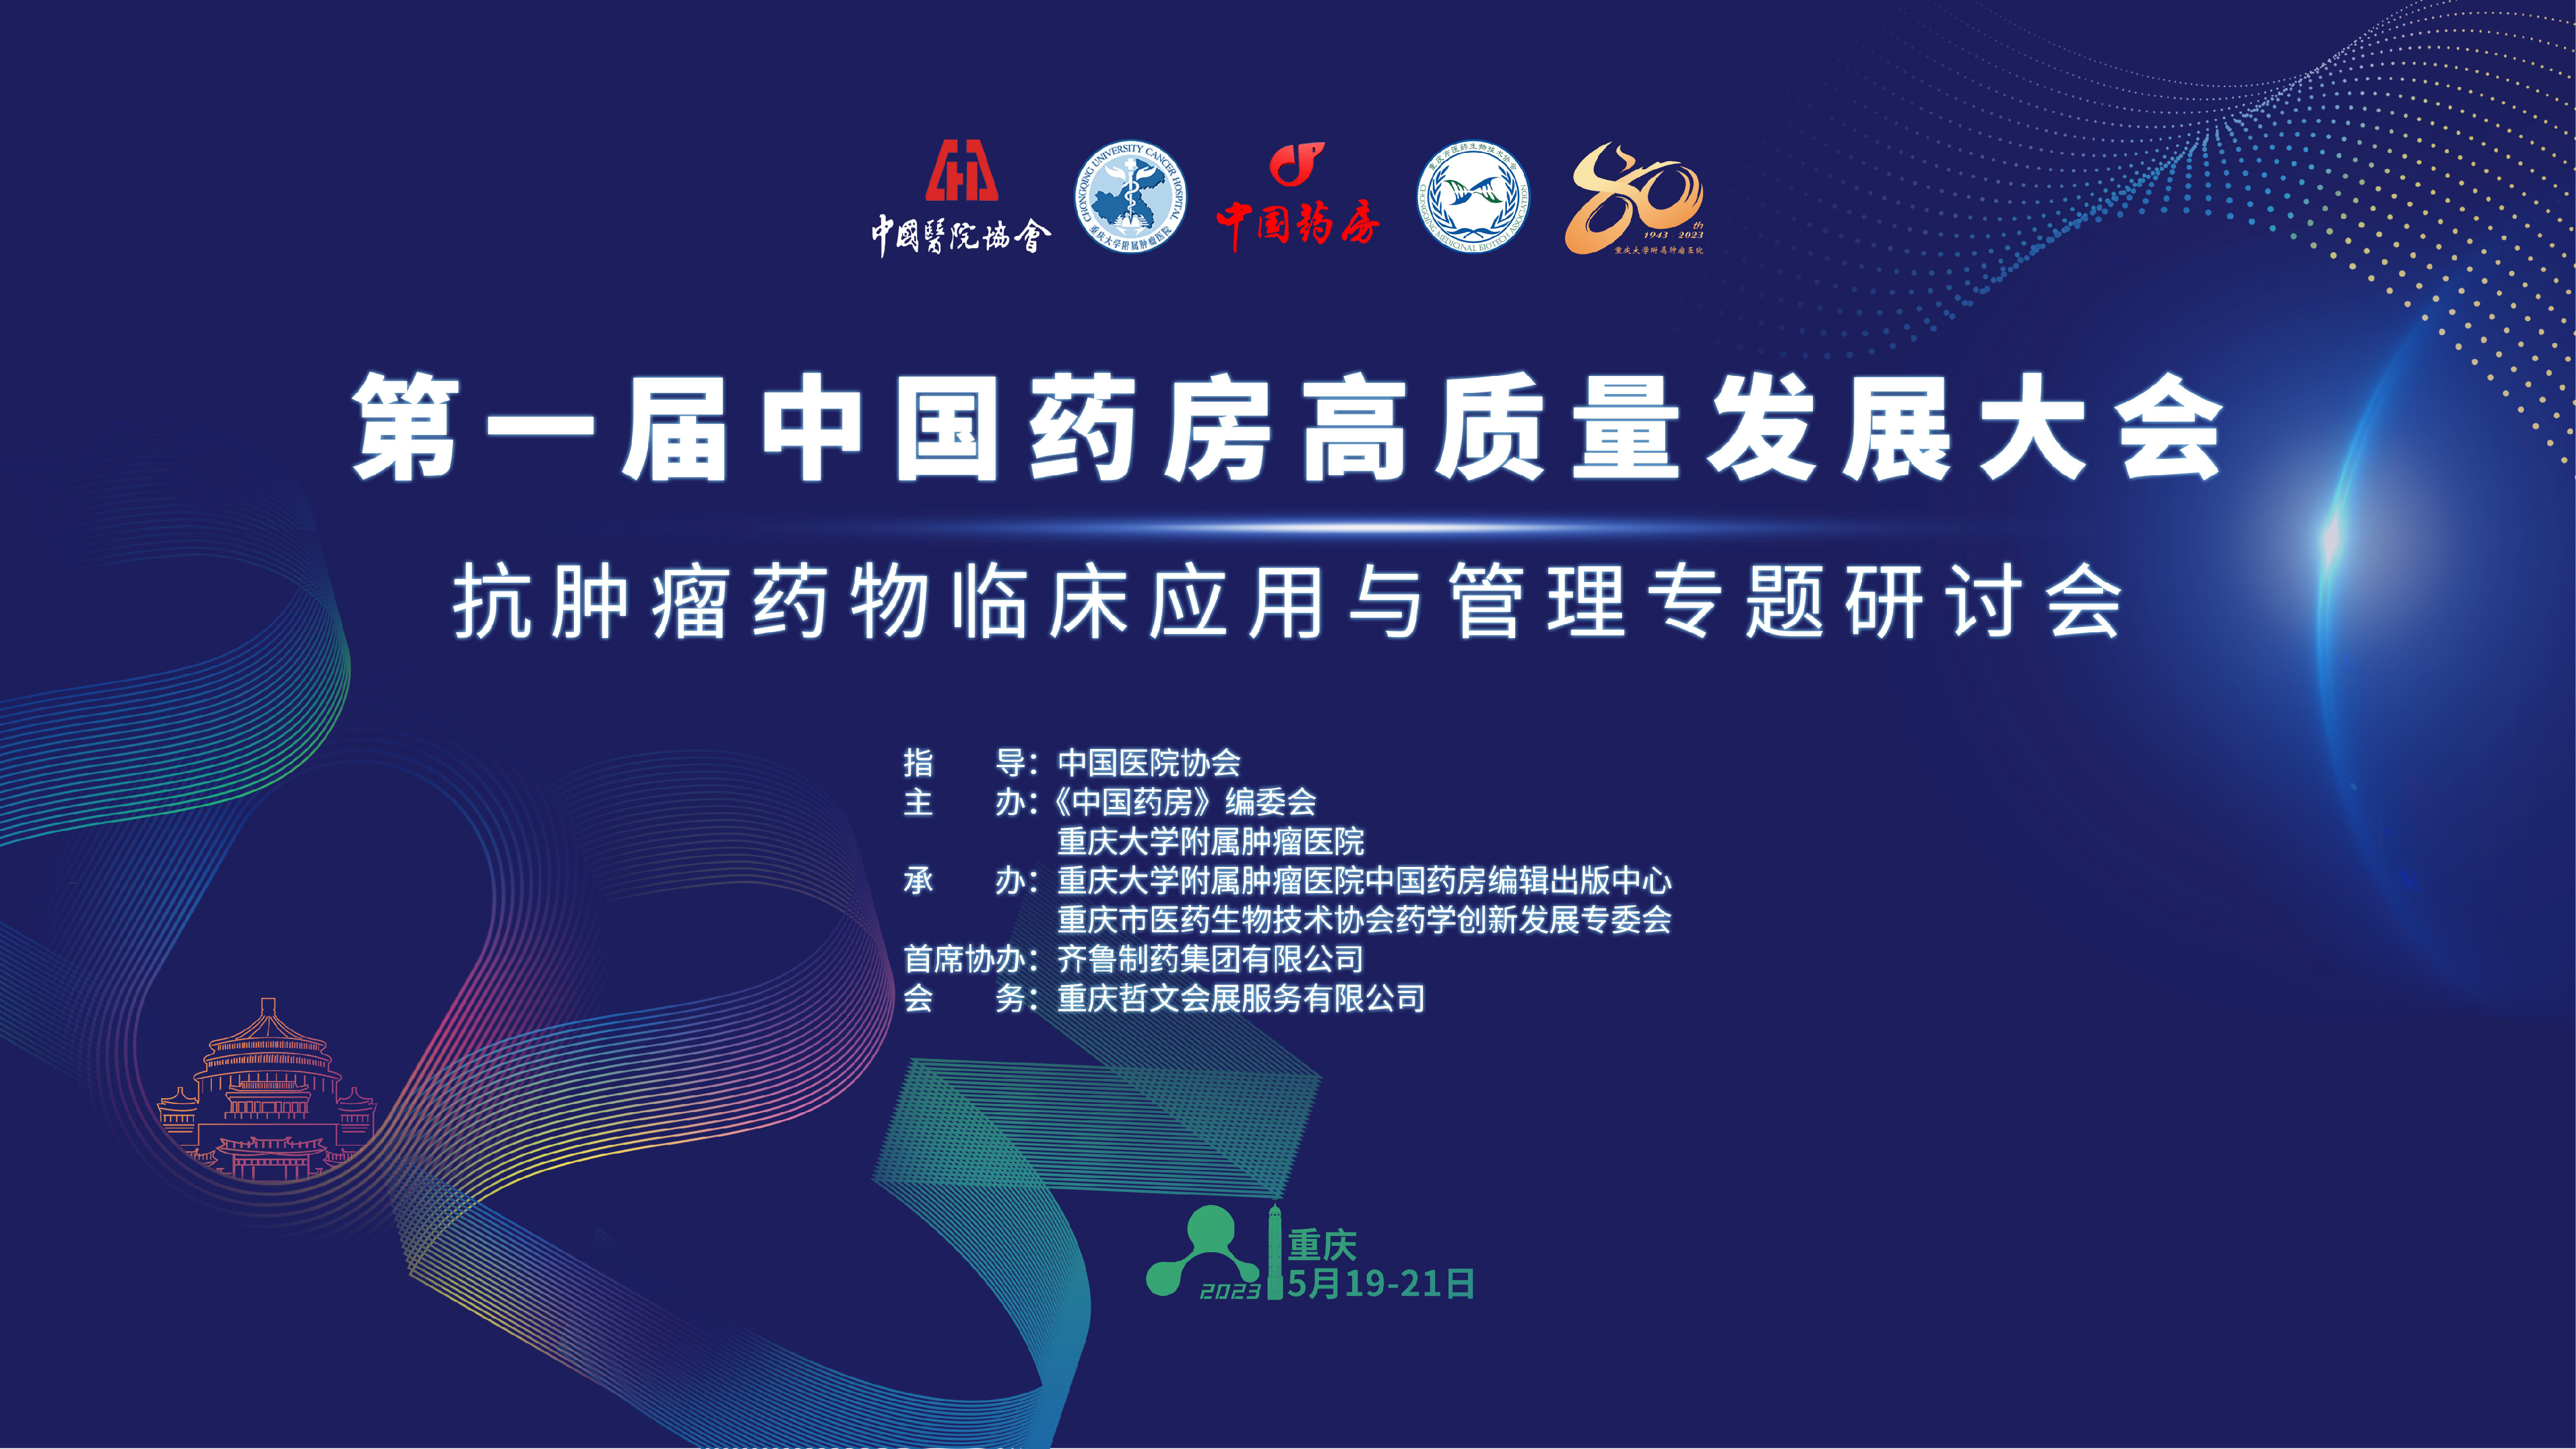 第一届中国药房高质量发展大会——抗肿瘤药物临床应用与管理专题研讨会